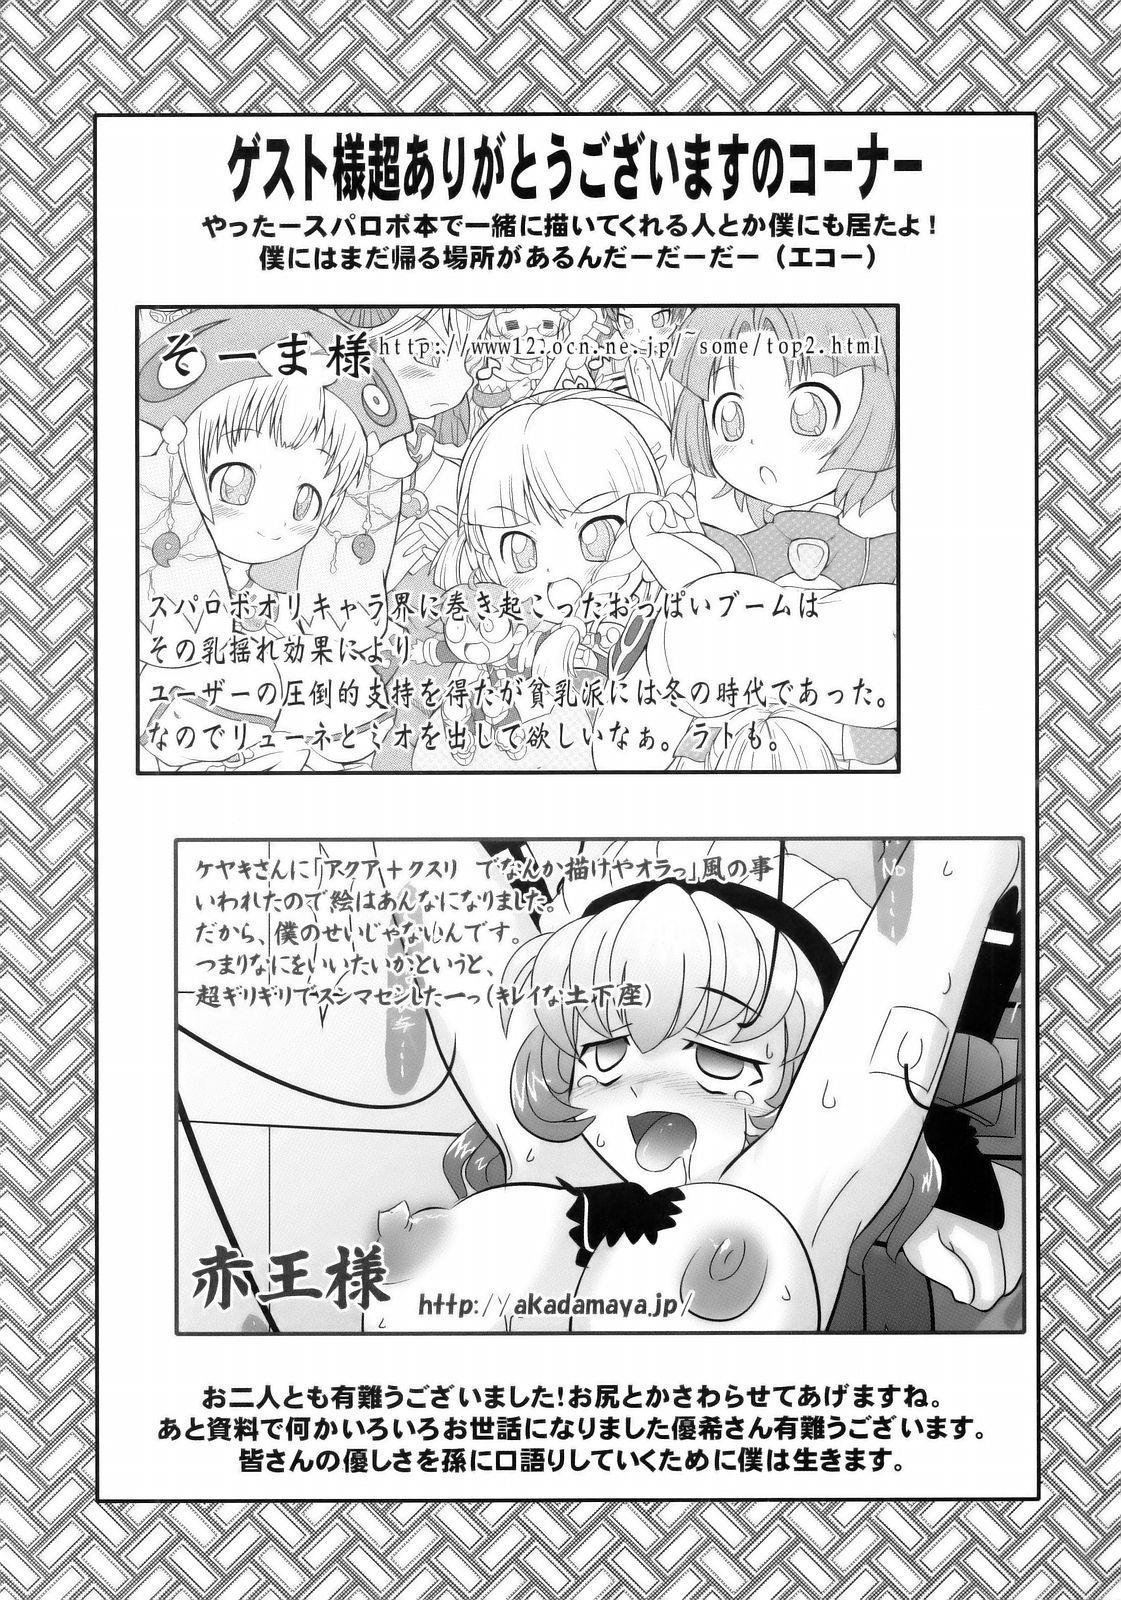 Three Some Boku no Watashi no Super Bobobbo Taisen MGJOX - Super robot wars Girl Get Fuck - Page 28